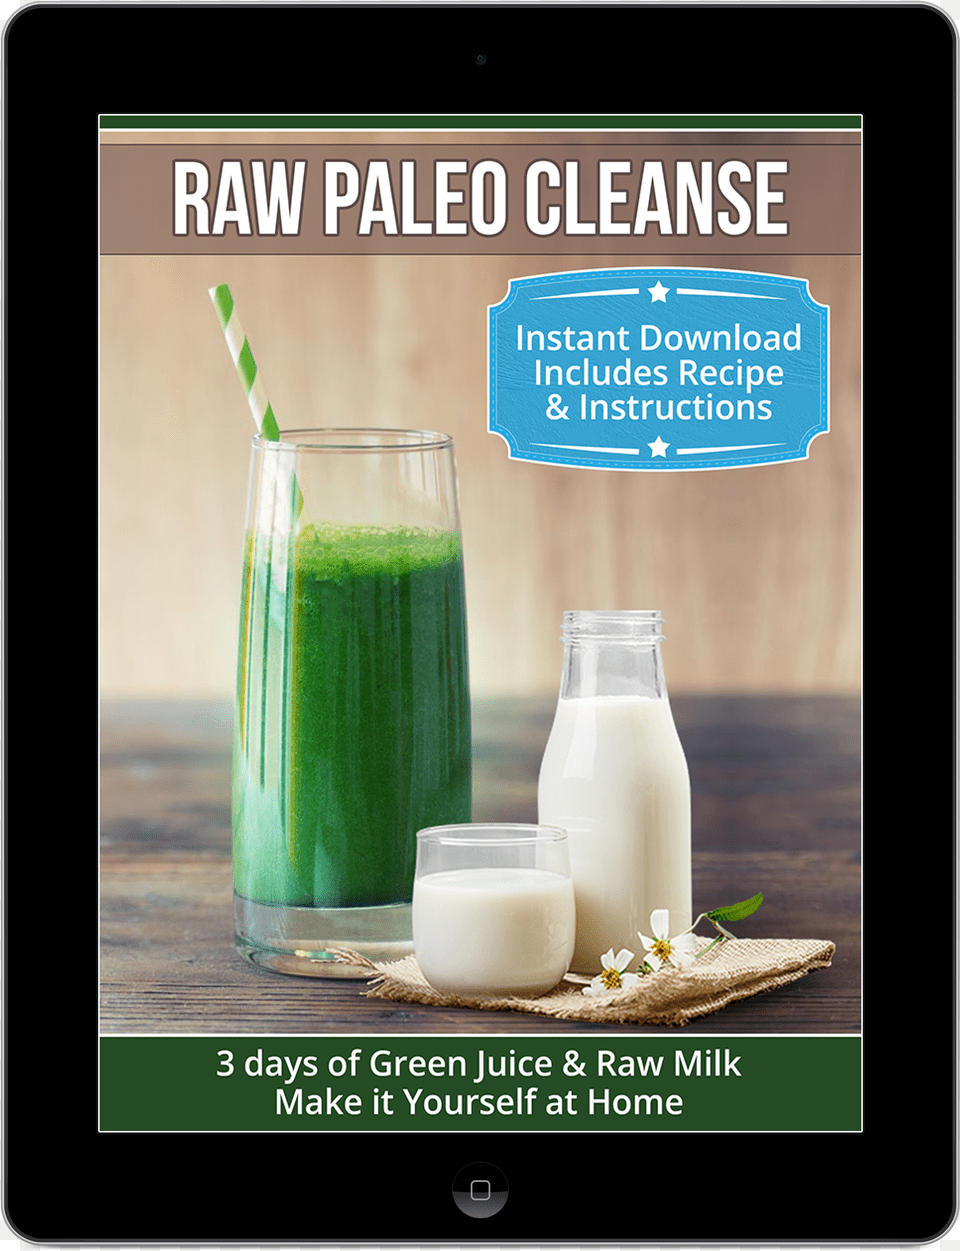 Raw Paleo Cleanse, Beverage, Milk, Juice, Smoothie Png Image